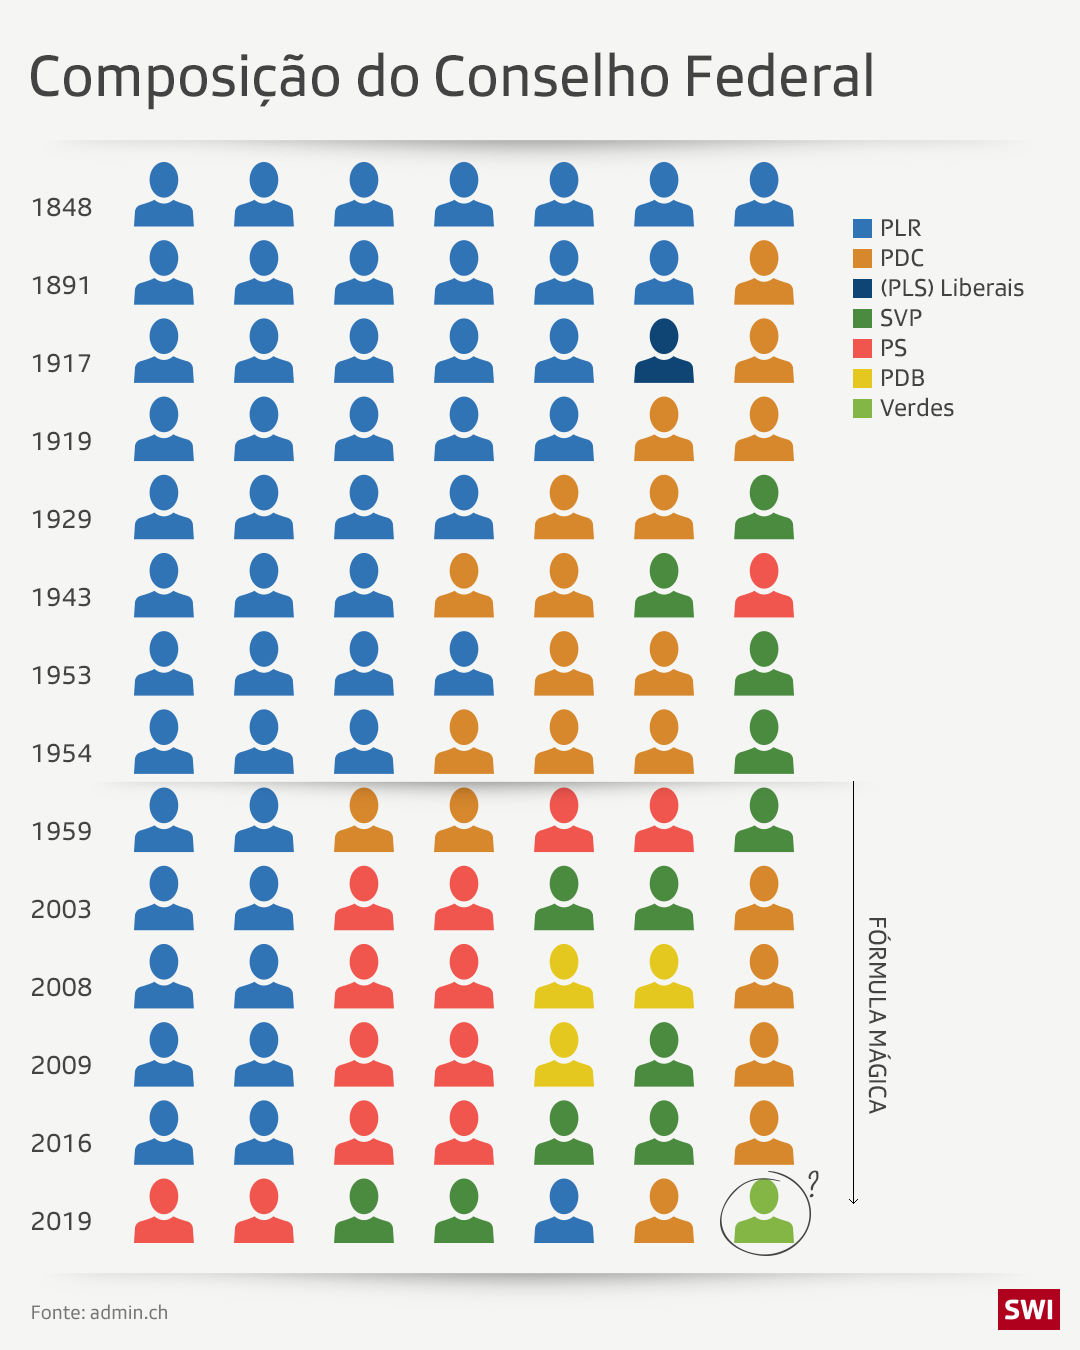 Gráfico com a composição do Conselho Federal ao longo dos anos